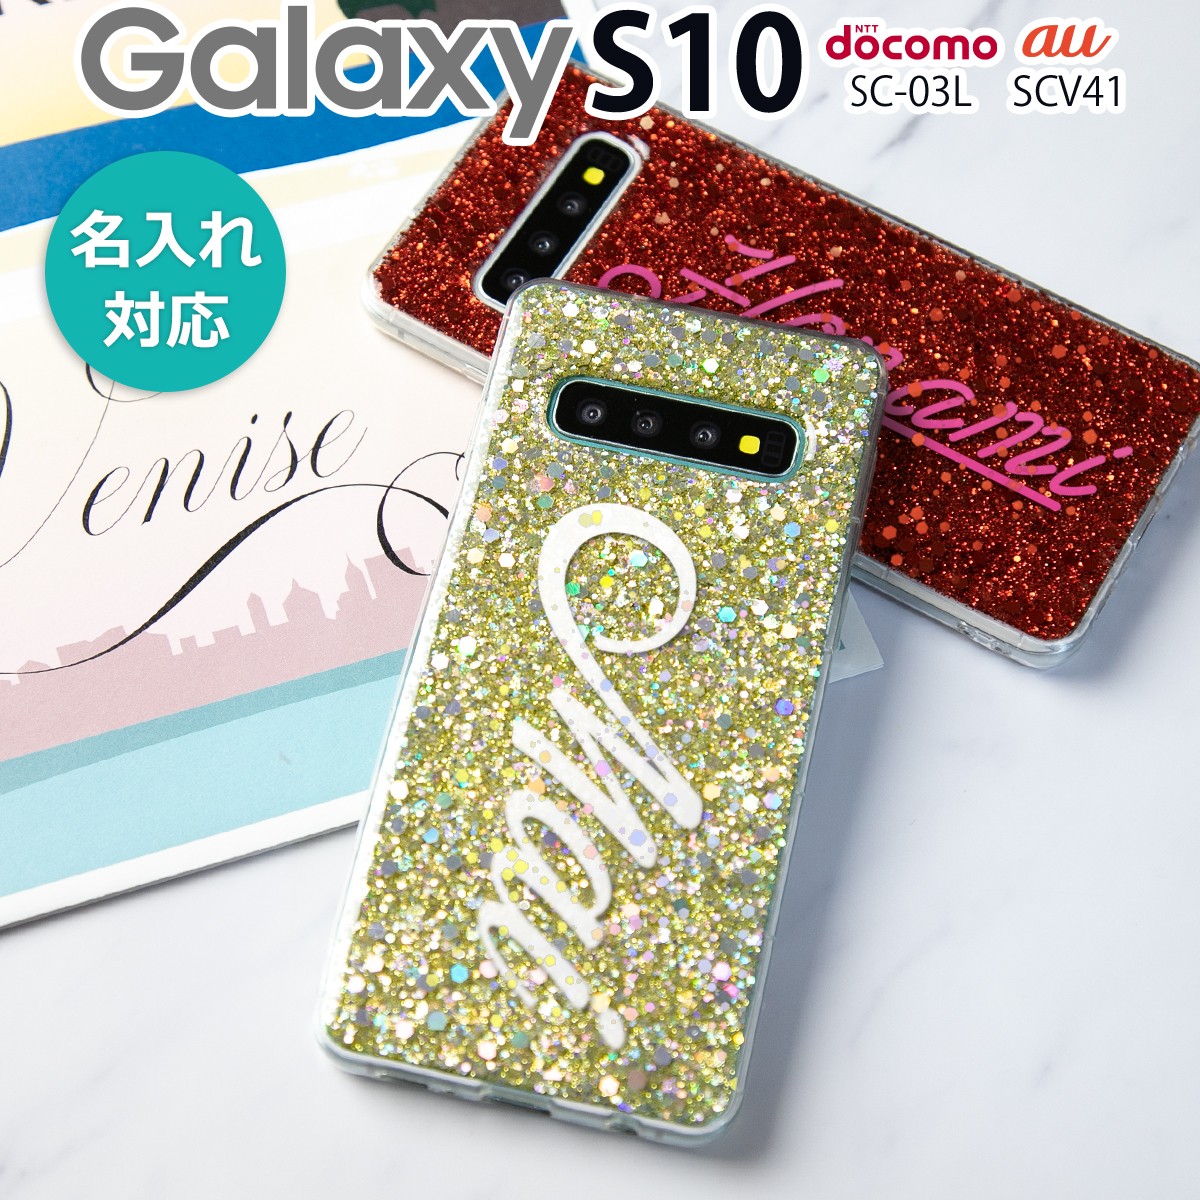 Galaxy S10 ケース カバー スマホケース 韓国 SC-03L SCV41 グリッターラメケース グリッターケース キラキラ ラメ かわいい  おしゃれ 名入れ イニシャル :g-s10-lame:名入れスマホケースのチョモランマ 通販 